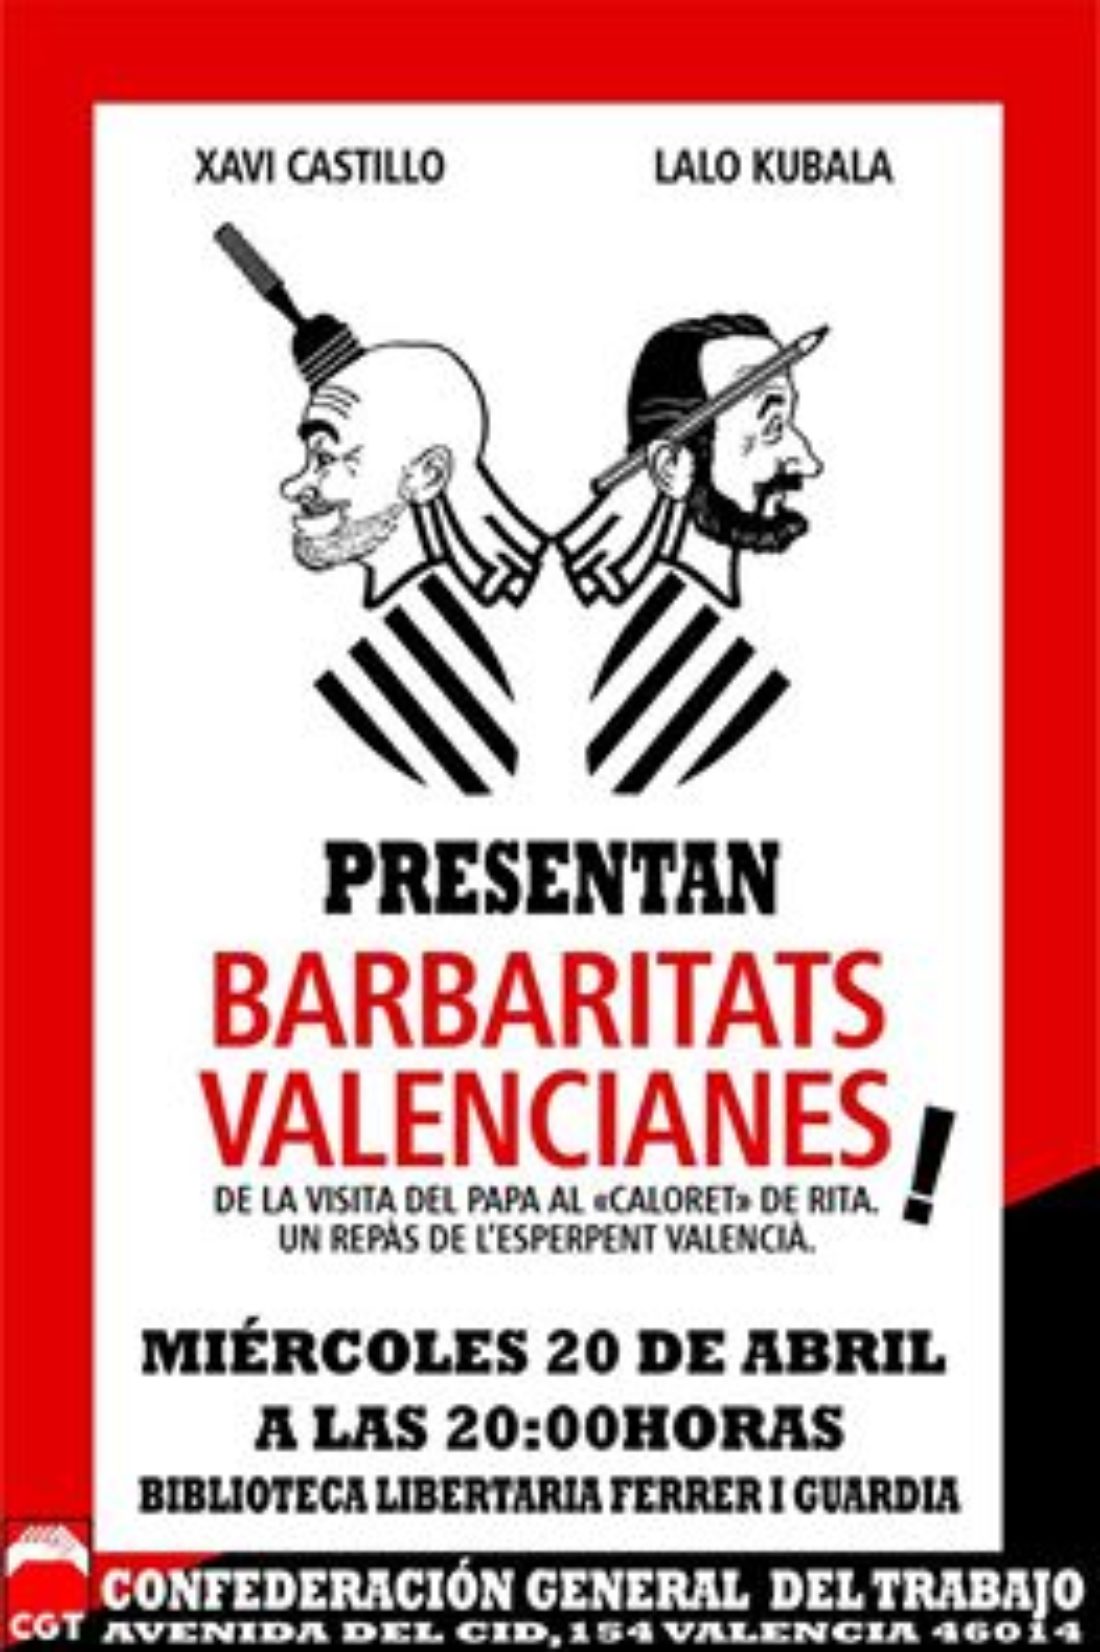 20-en Valencia: Lalo Kubala y Xavi Castillo presentan en la CGT el libro “Barbaritats Valencianes”